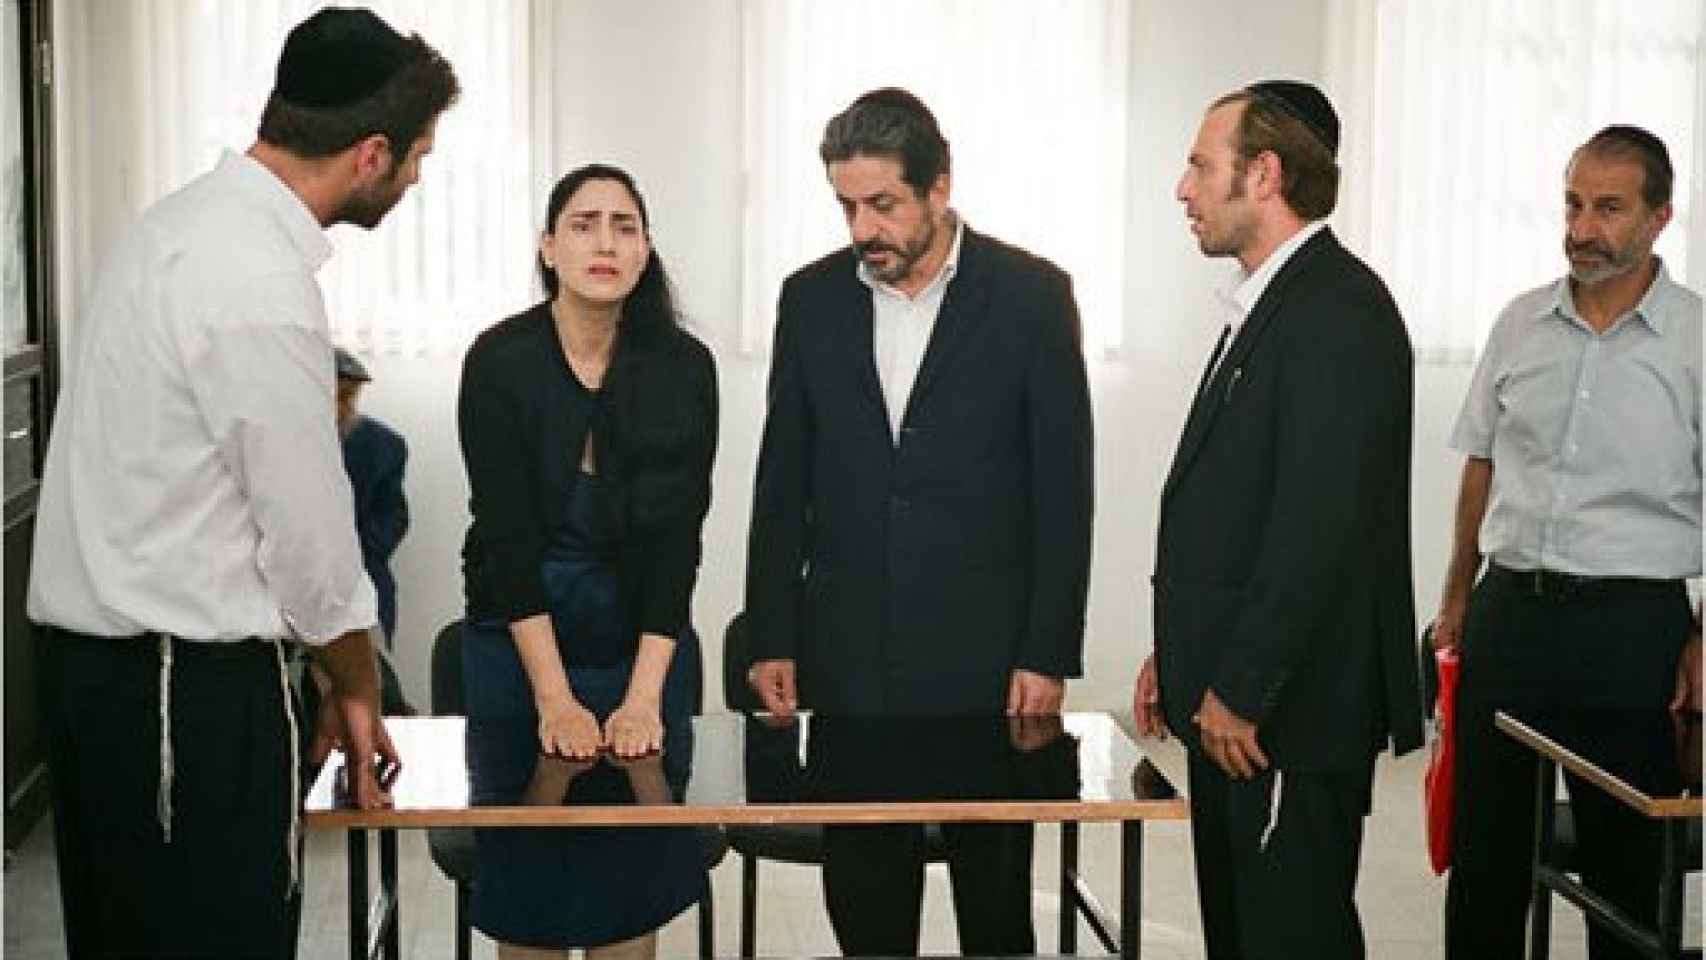 Image: Gett. El divorcio de Viviane Amsalem: grotesco machismo en Israel